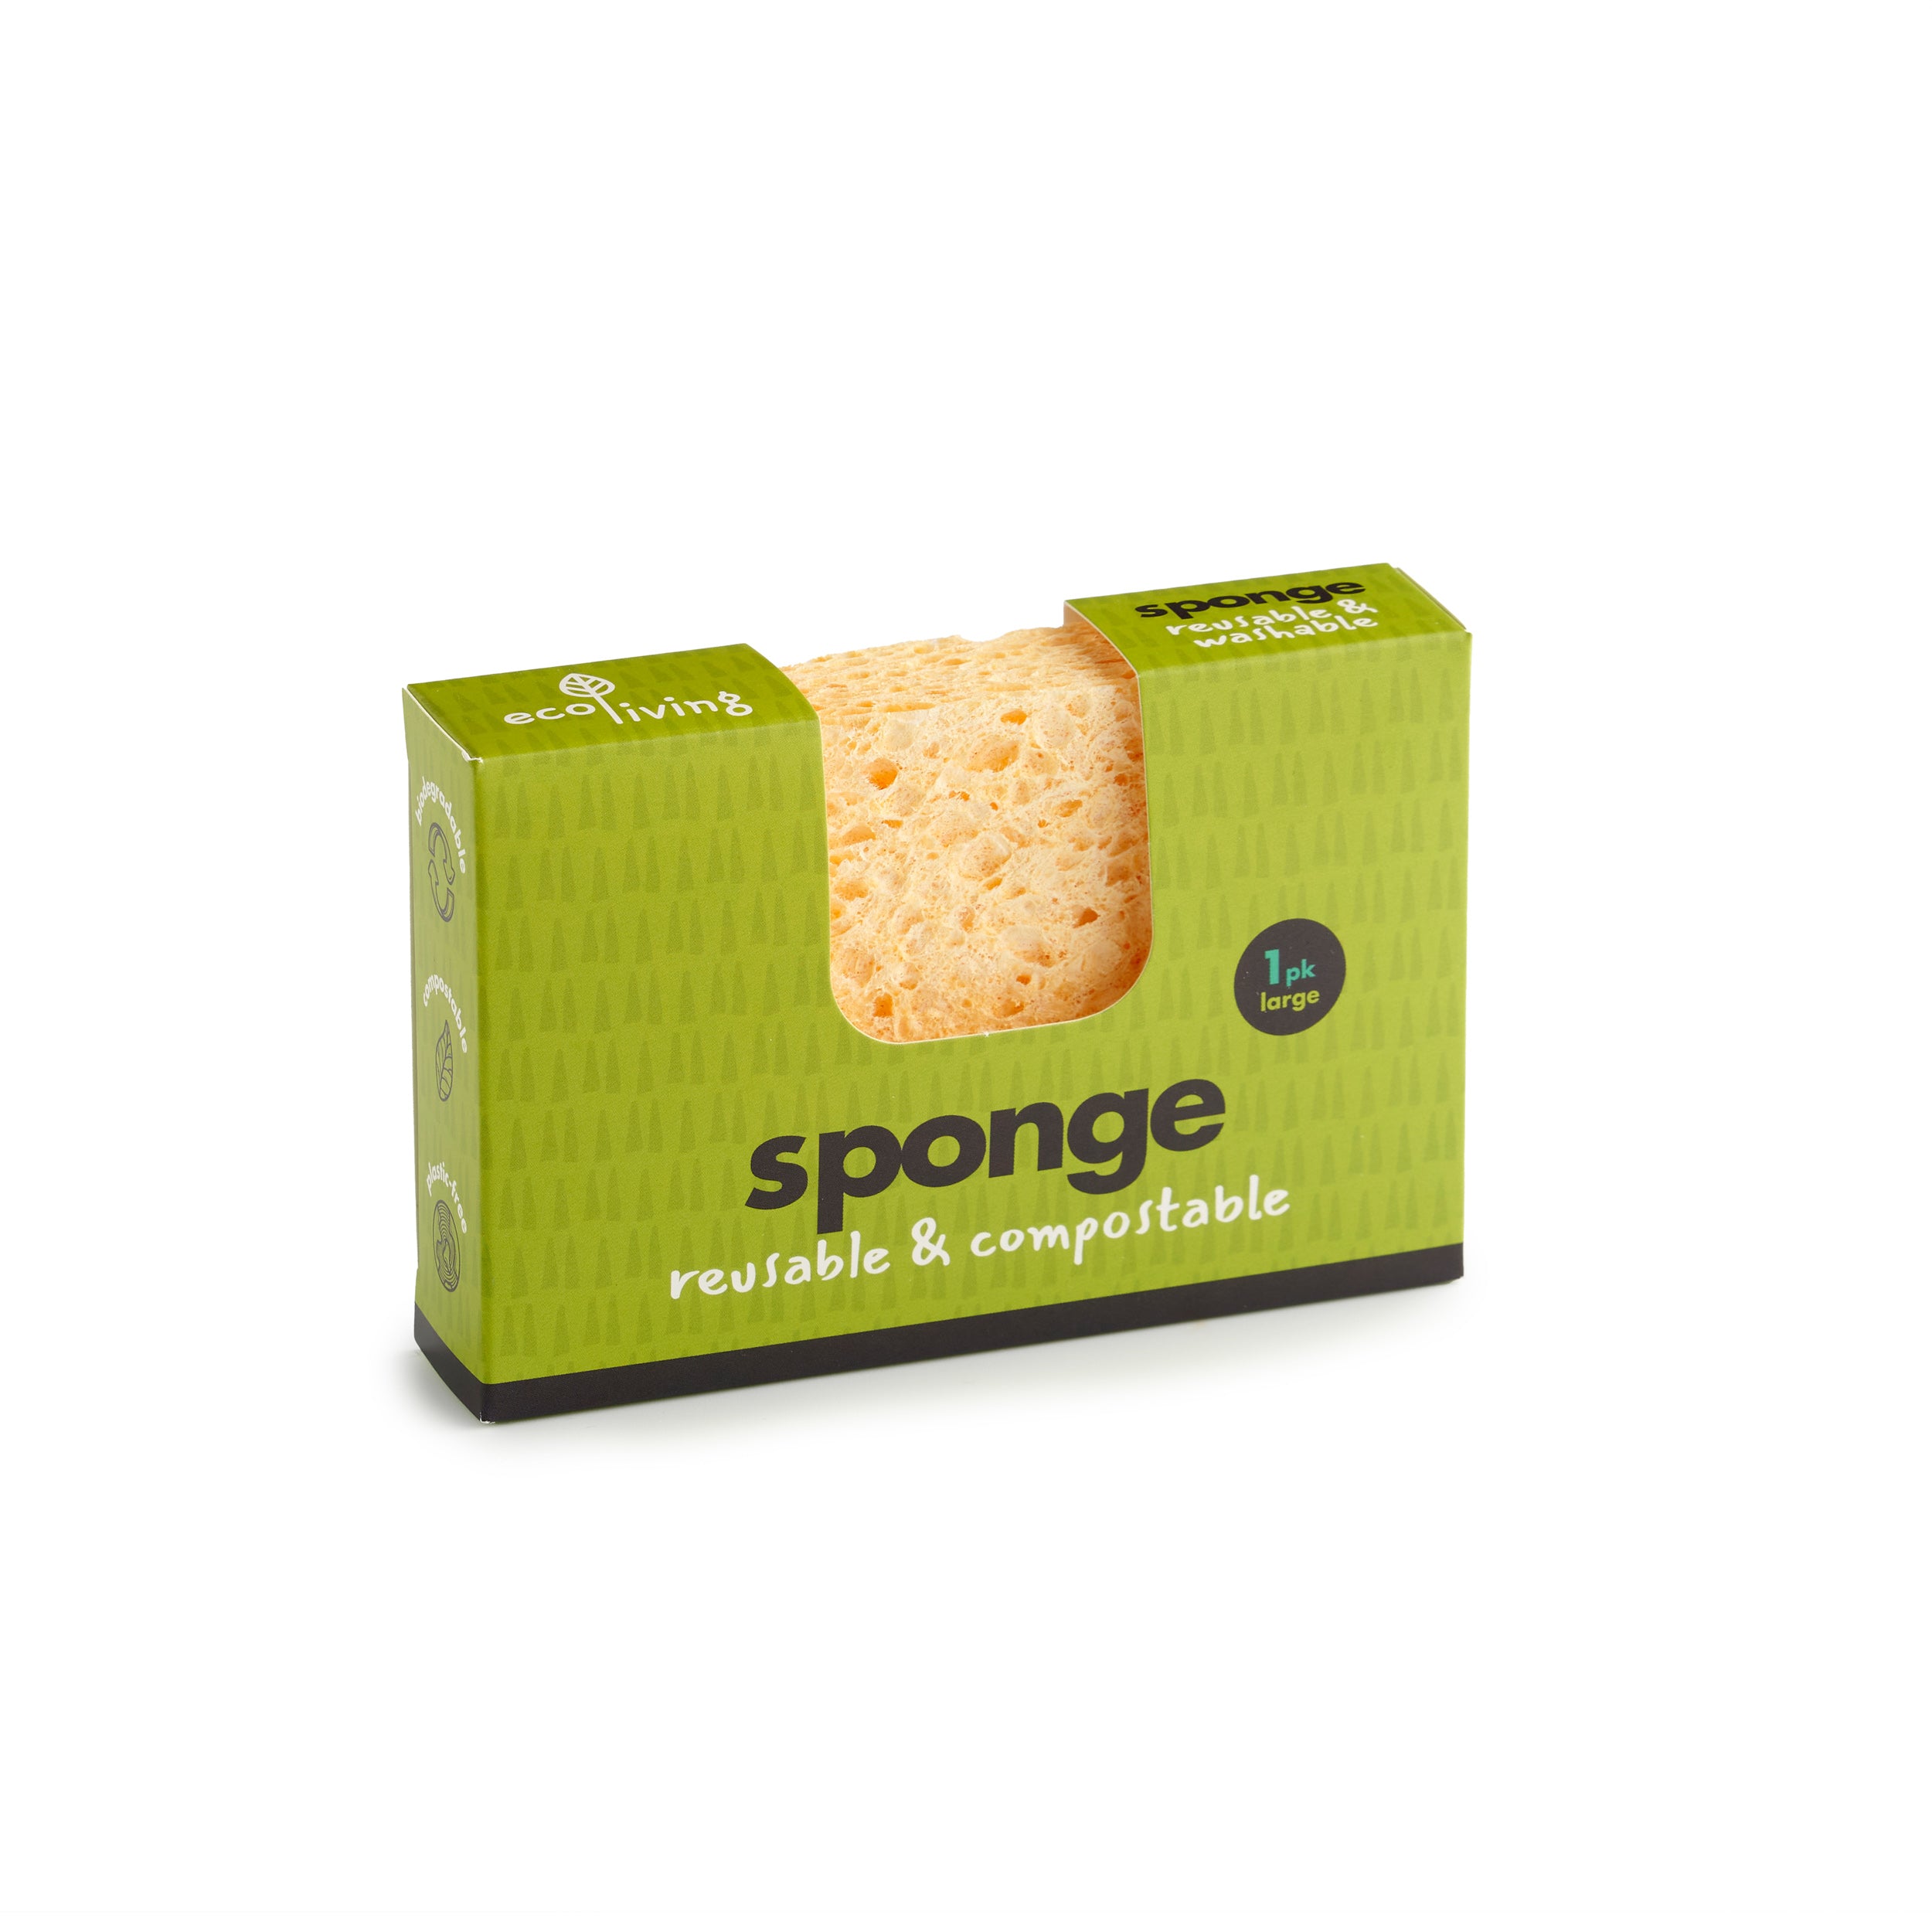 Washable Sponge 